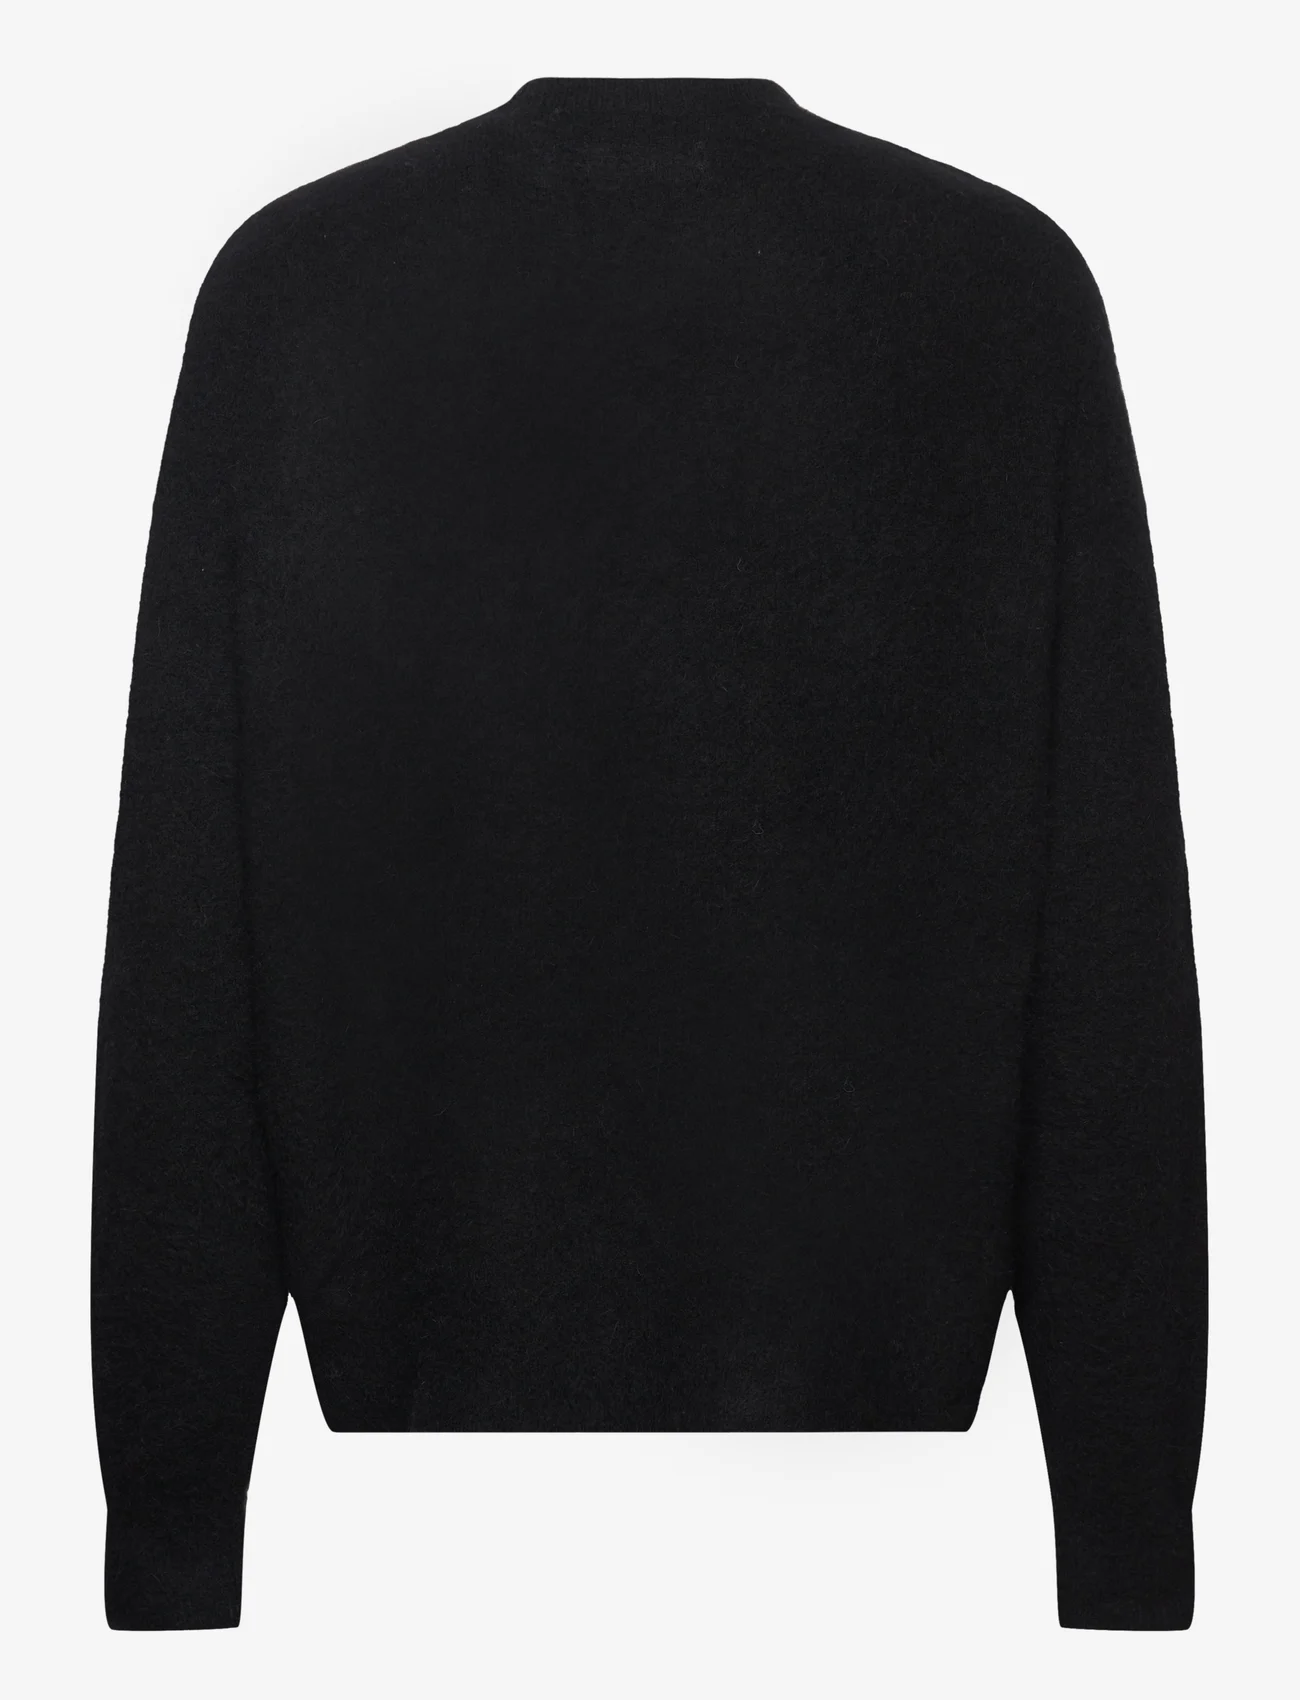 AllSaints - WILDER CREW - knitted round necks - black - 1